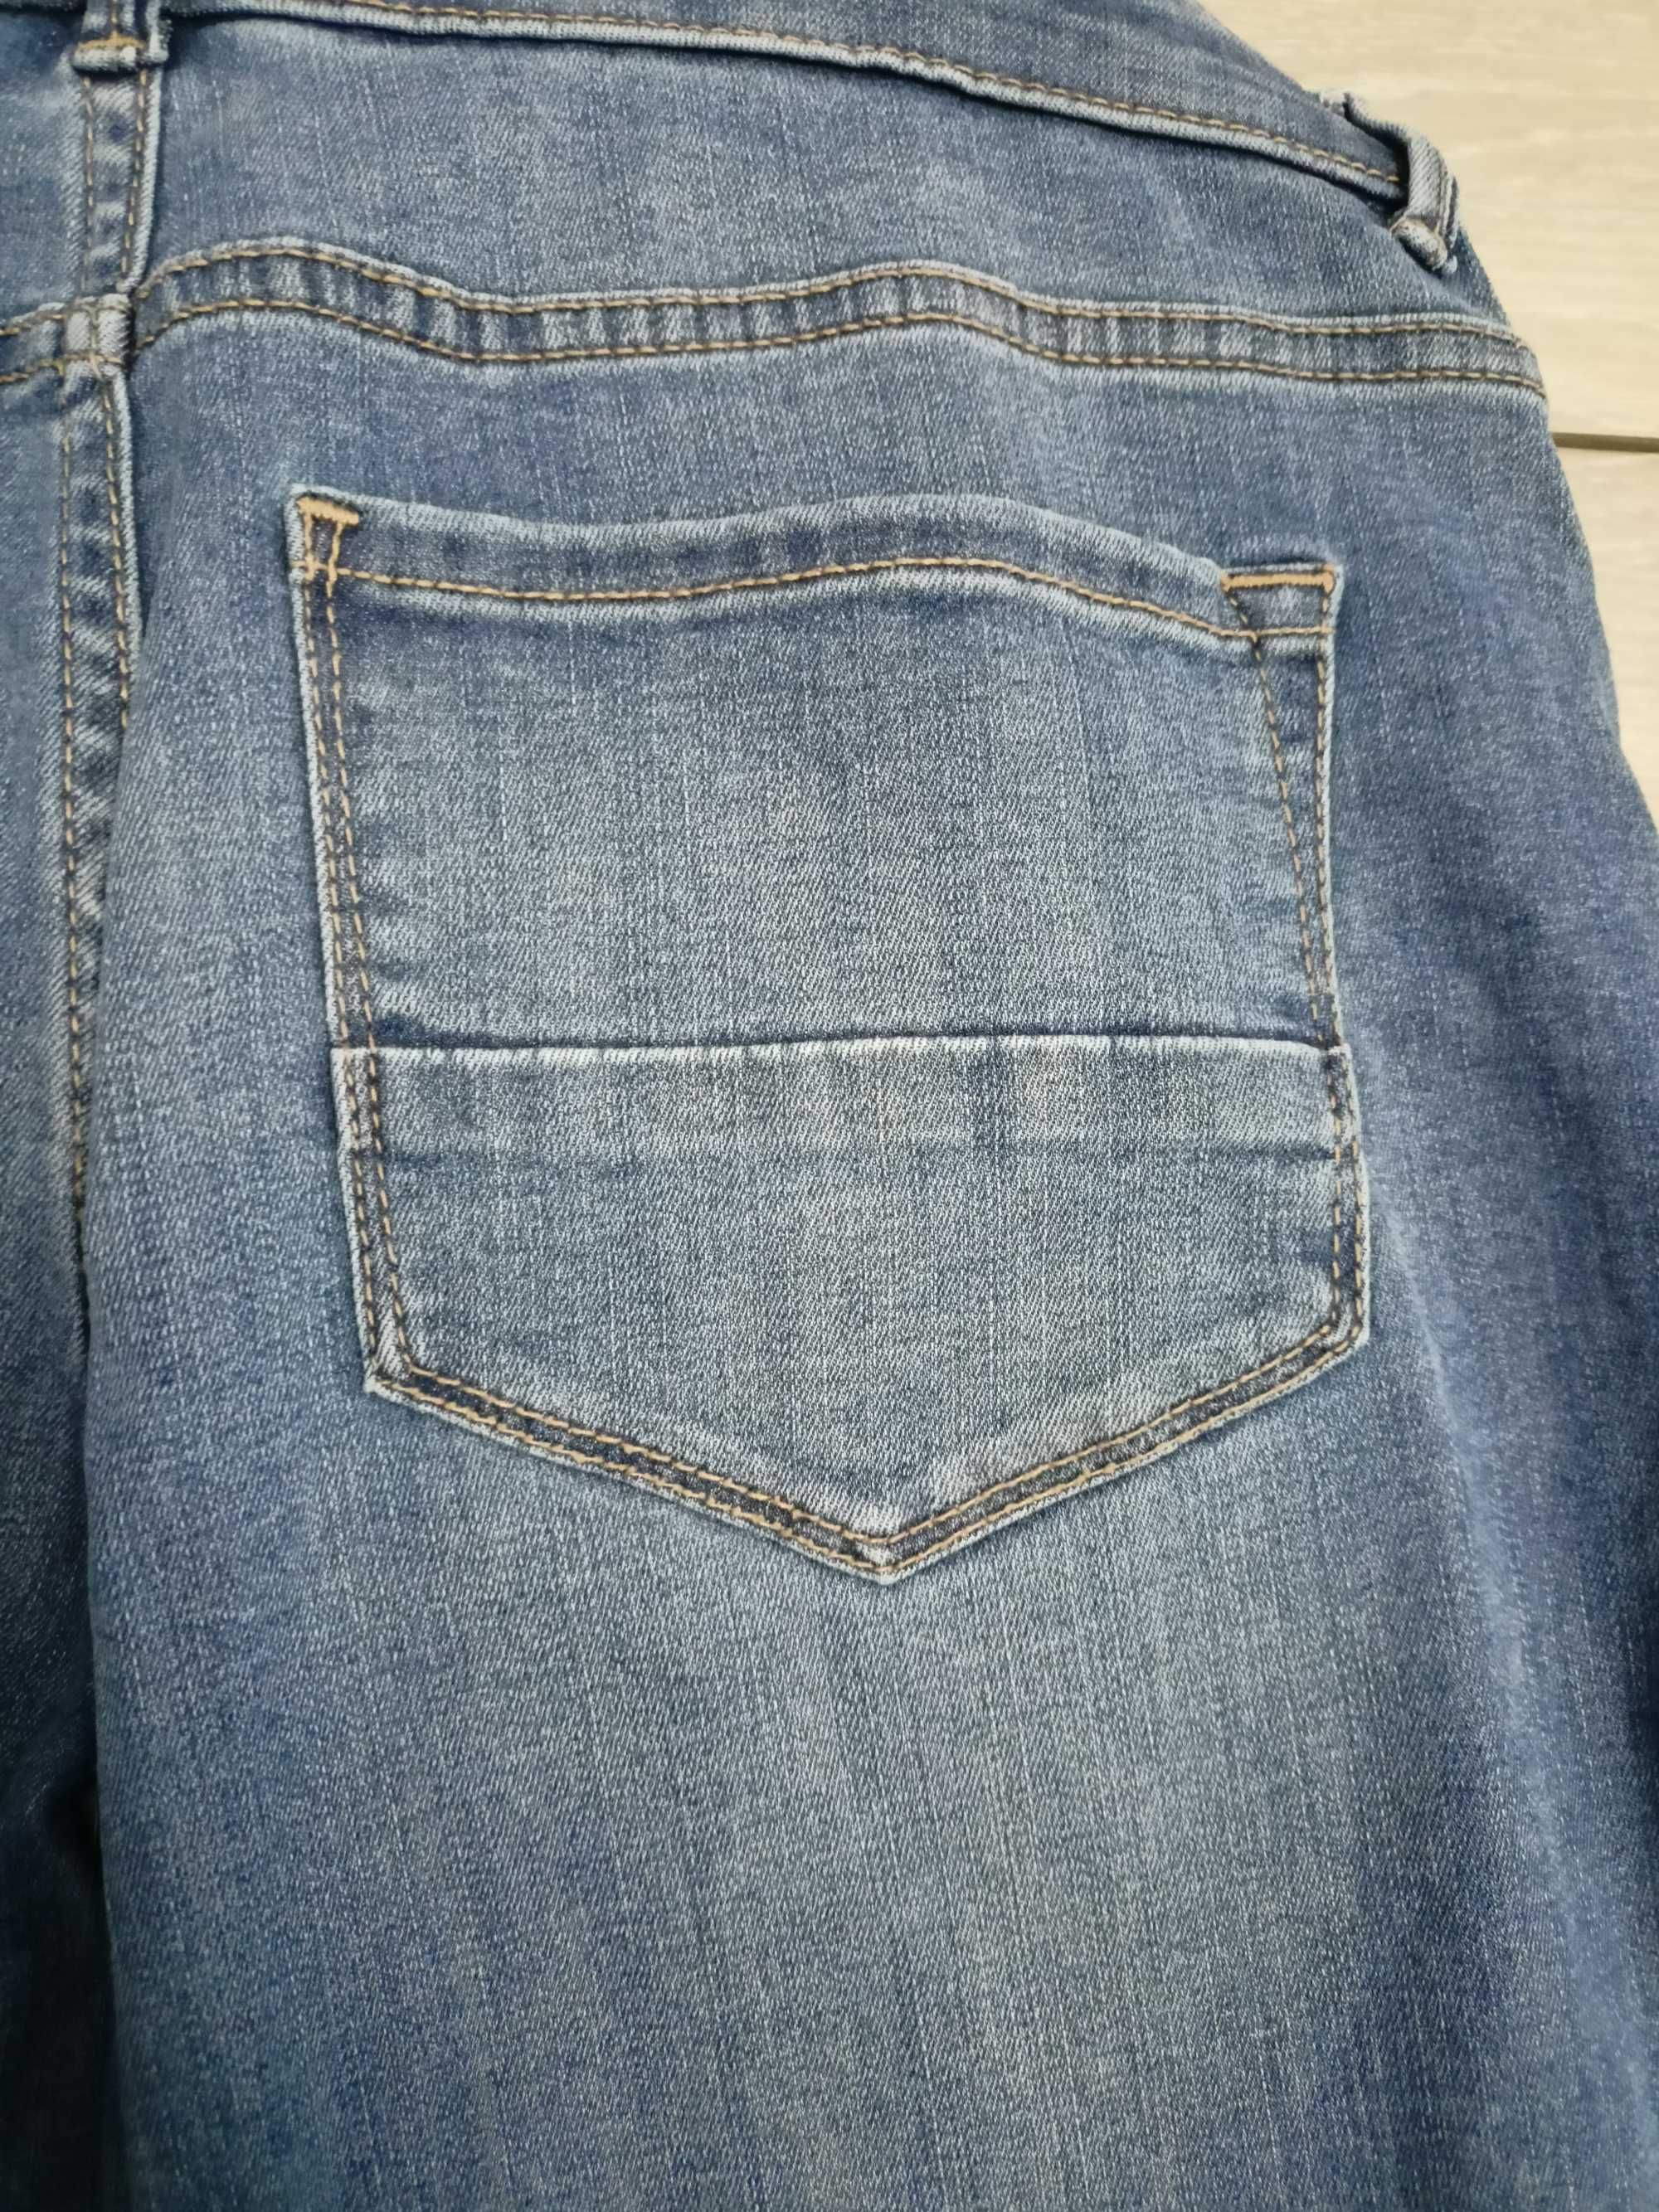 Spodnie jeansowe ciążowe Maternity, rozmiar 40 z panelem